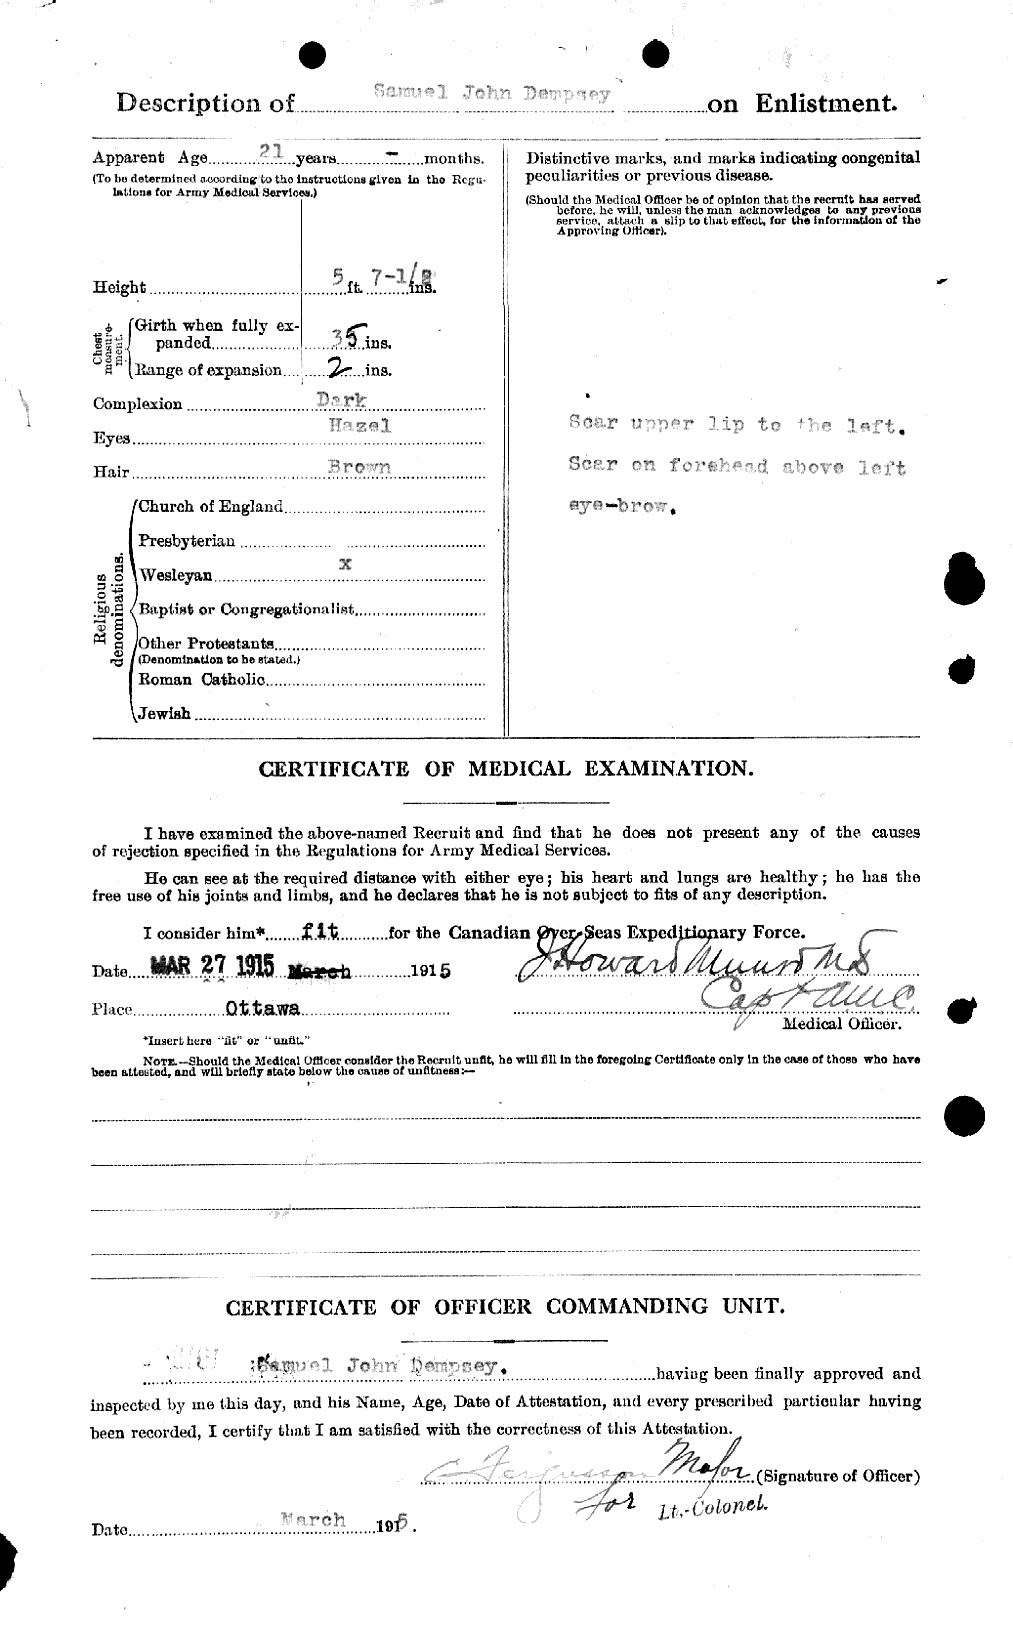 Dossiers du Personnel de la Première Guerre mondiale - CEC 051286b